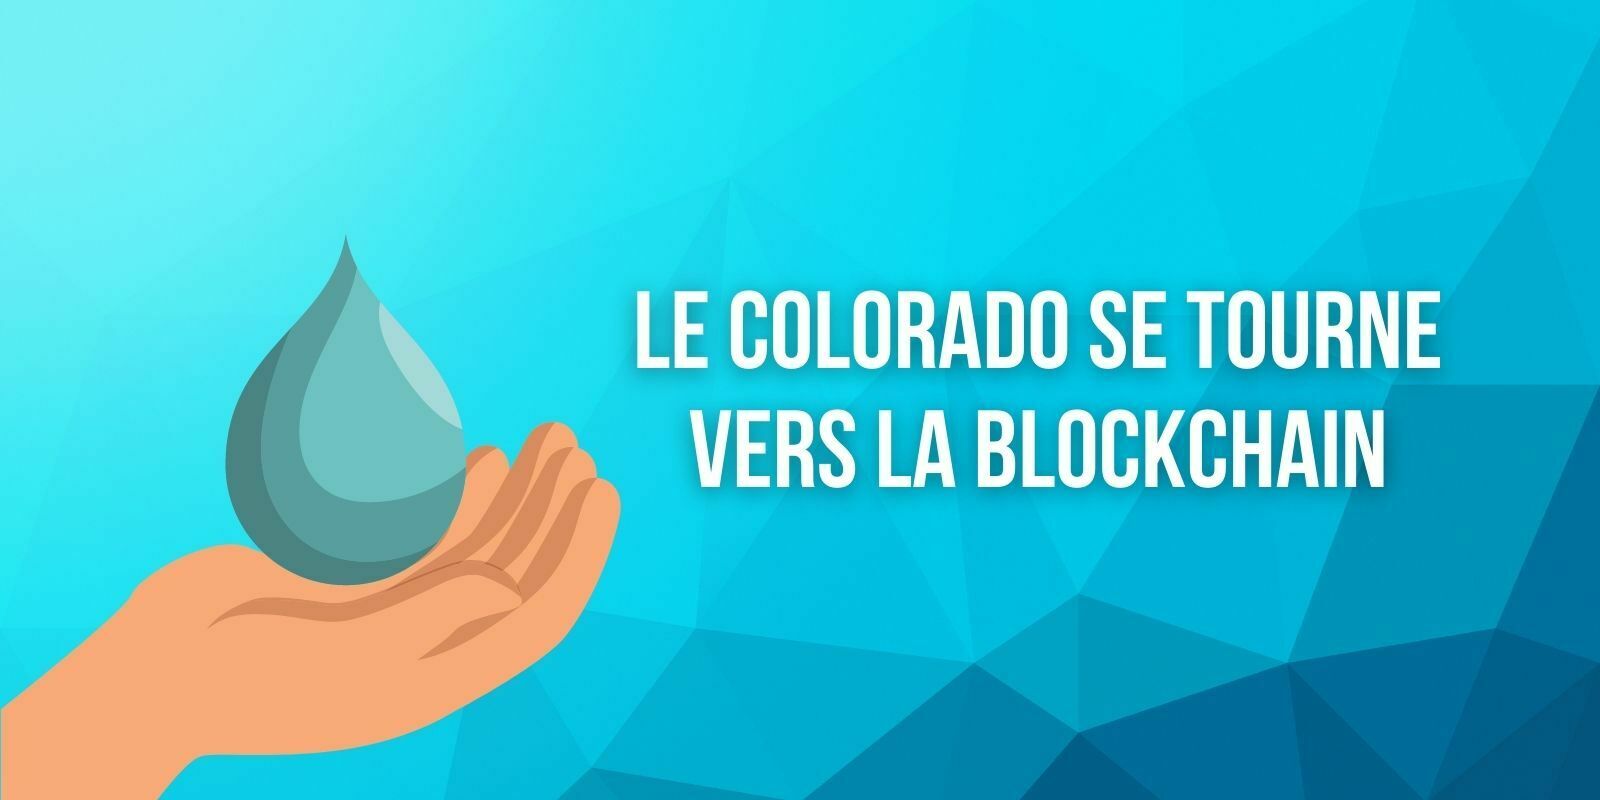 Le Colorado envisage d'utiliser la blockchain pour améliorer sa gestion de l'eau